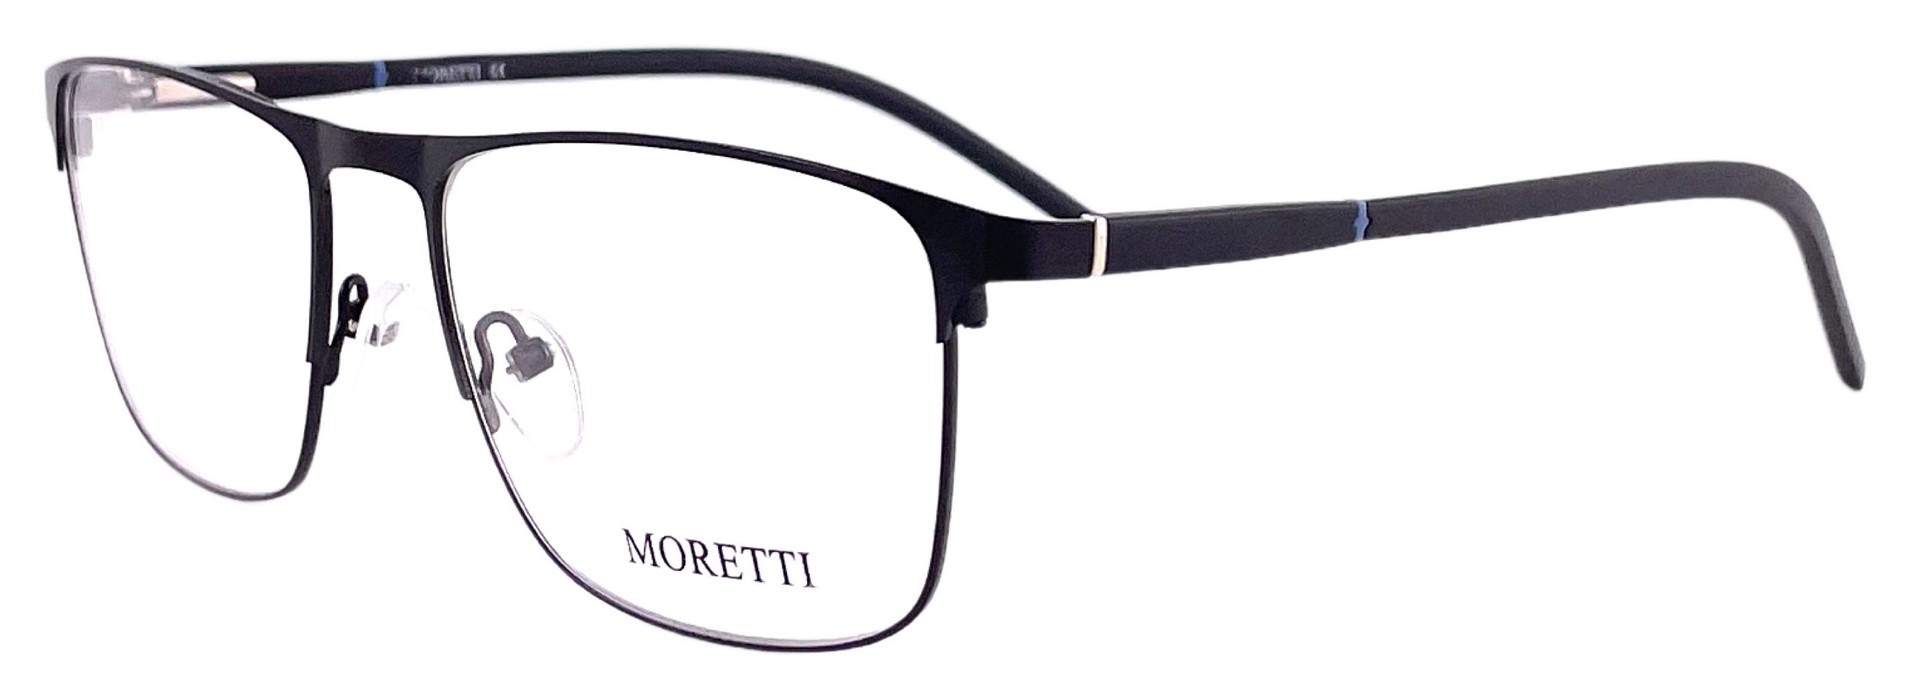 Moretti HE01-02 C1 2